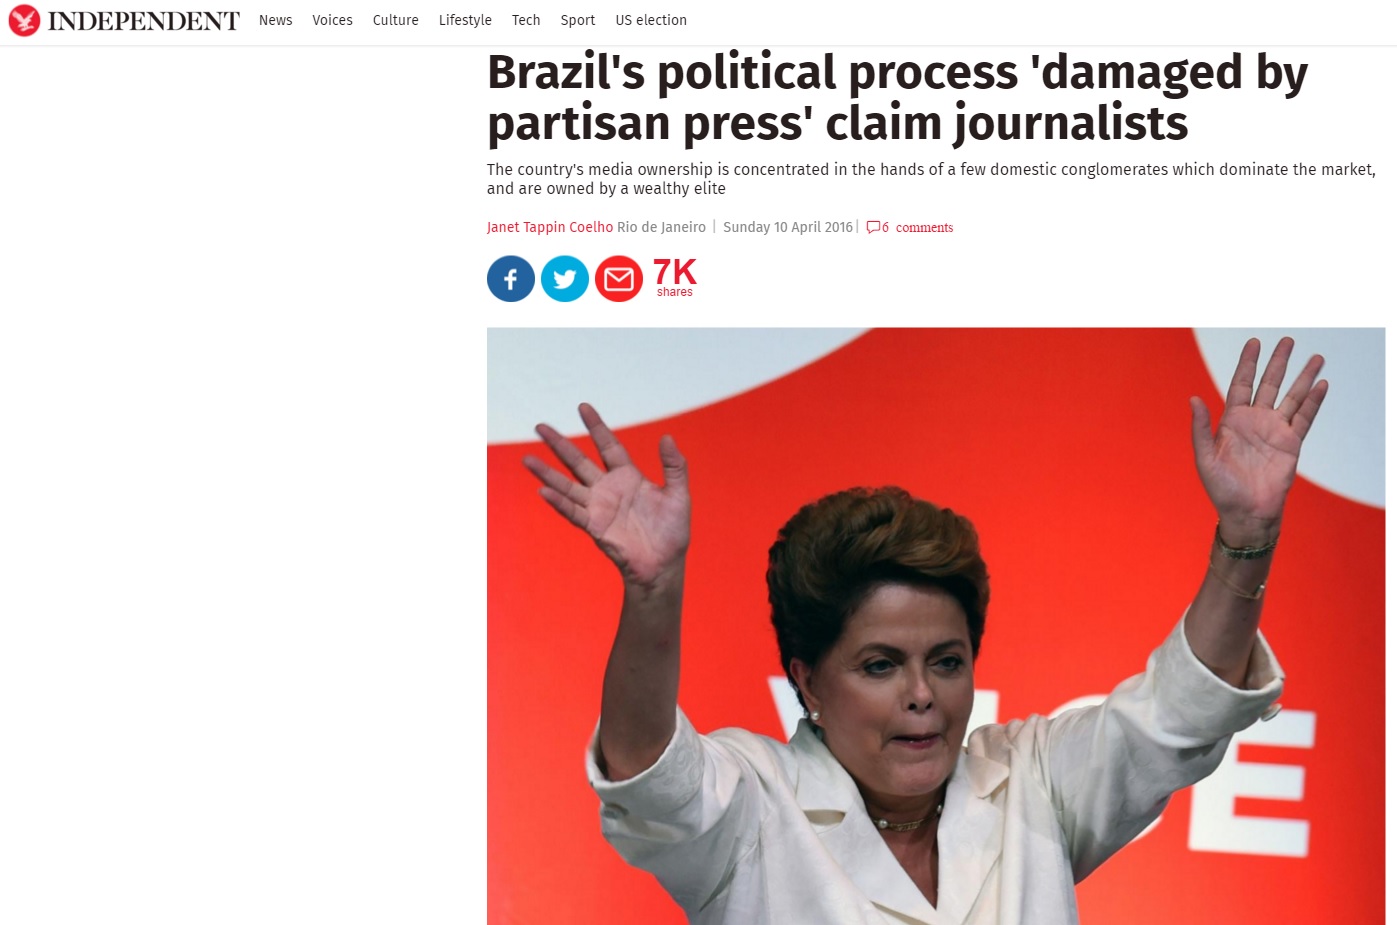 Mídia estrangeira avalia postura política da imprensa brasileira na crise